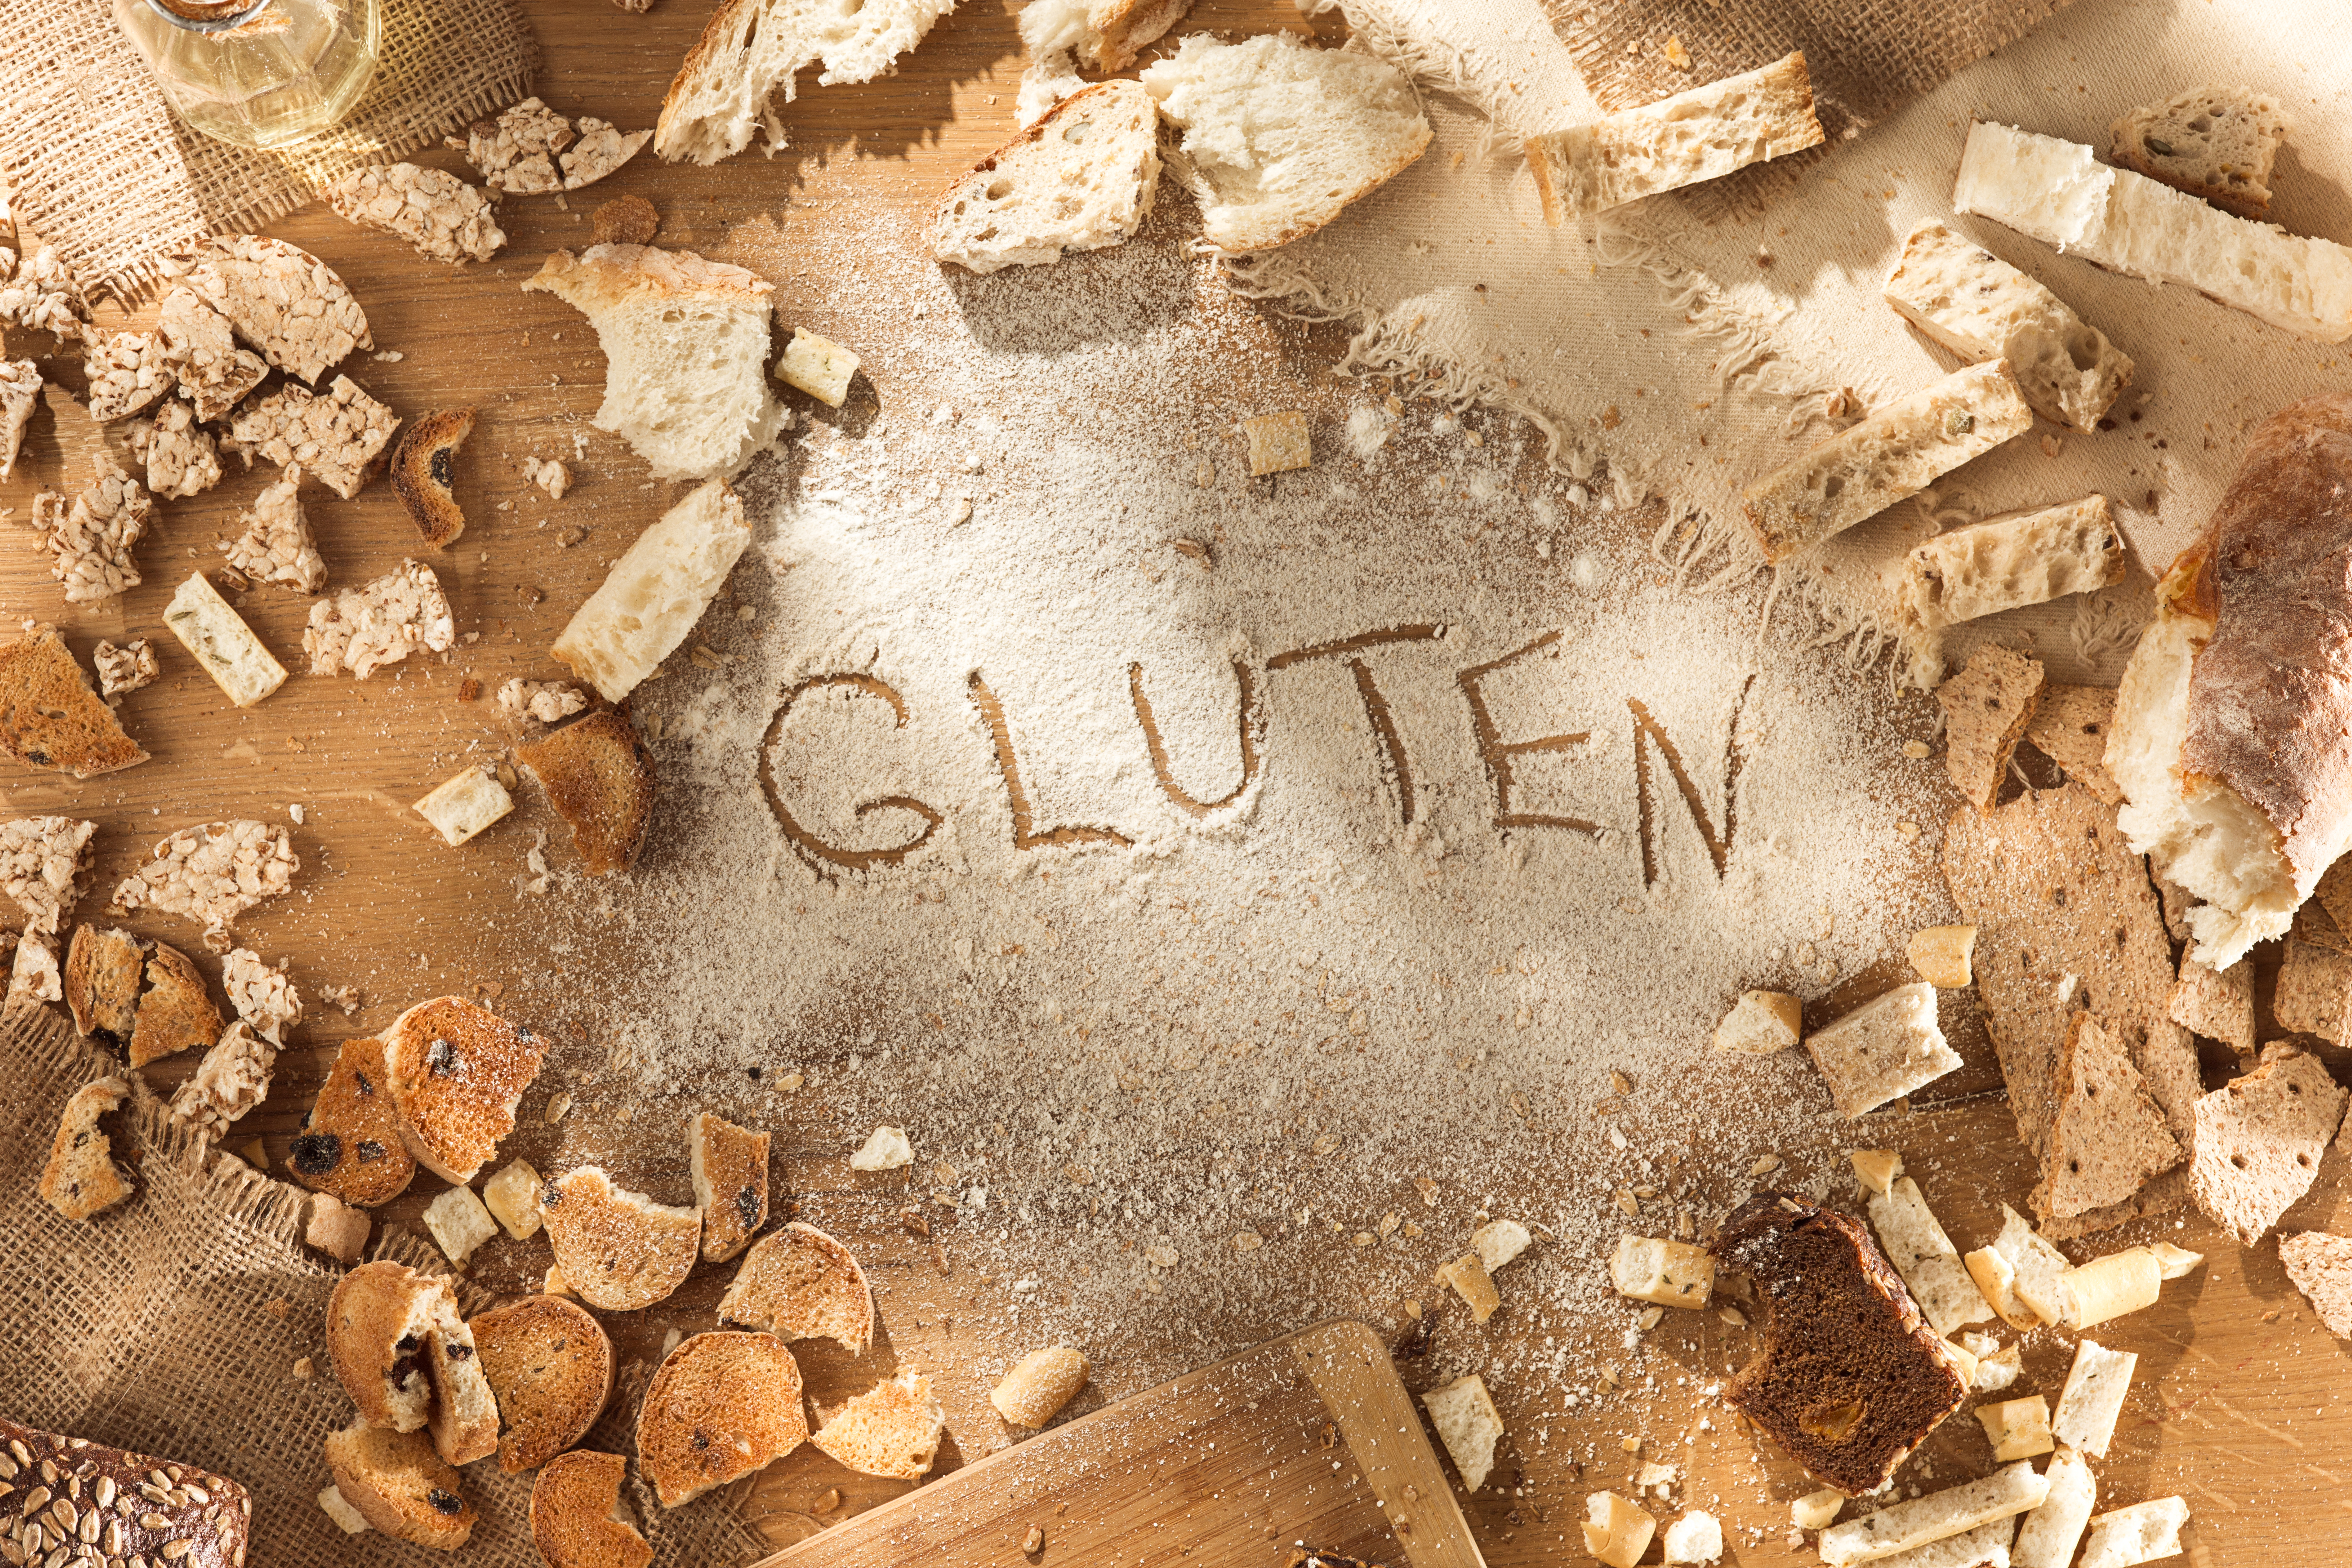 Intolerancia al gluten y Enfermedad Celíaca, ¿Qué debo saber?